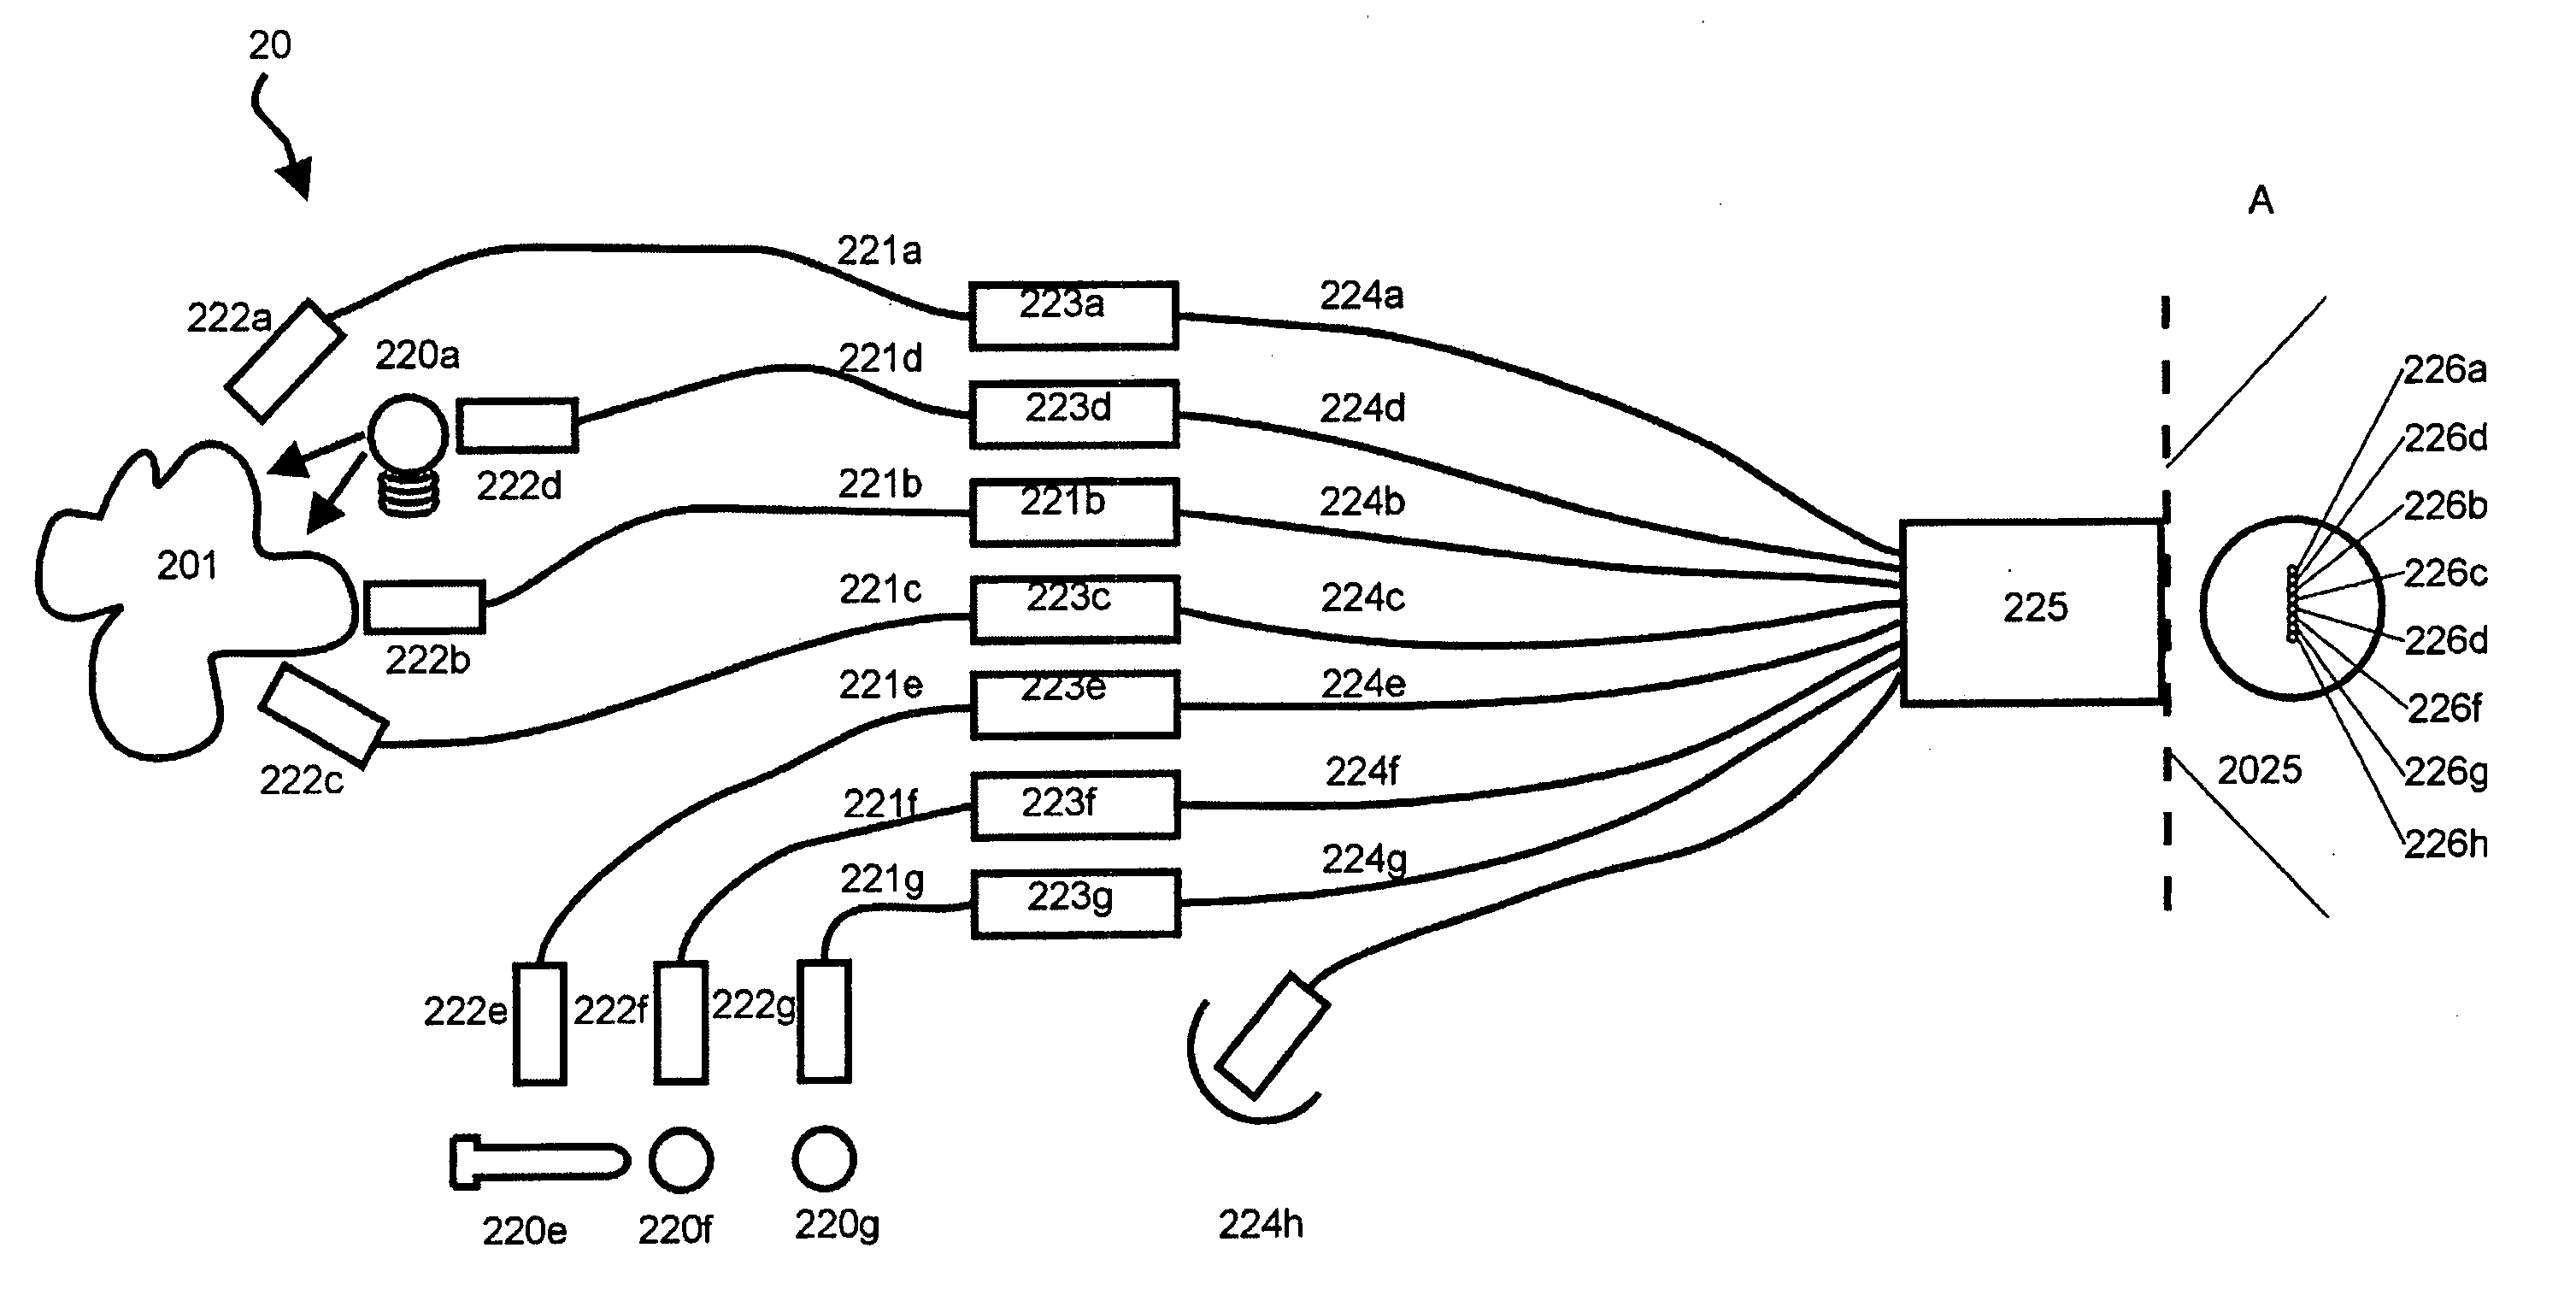 Multi-channel spectrum analyzer